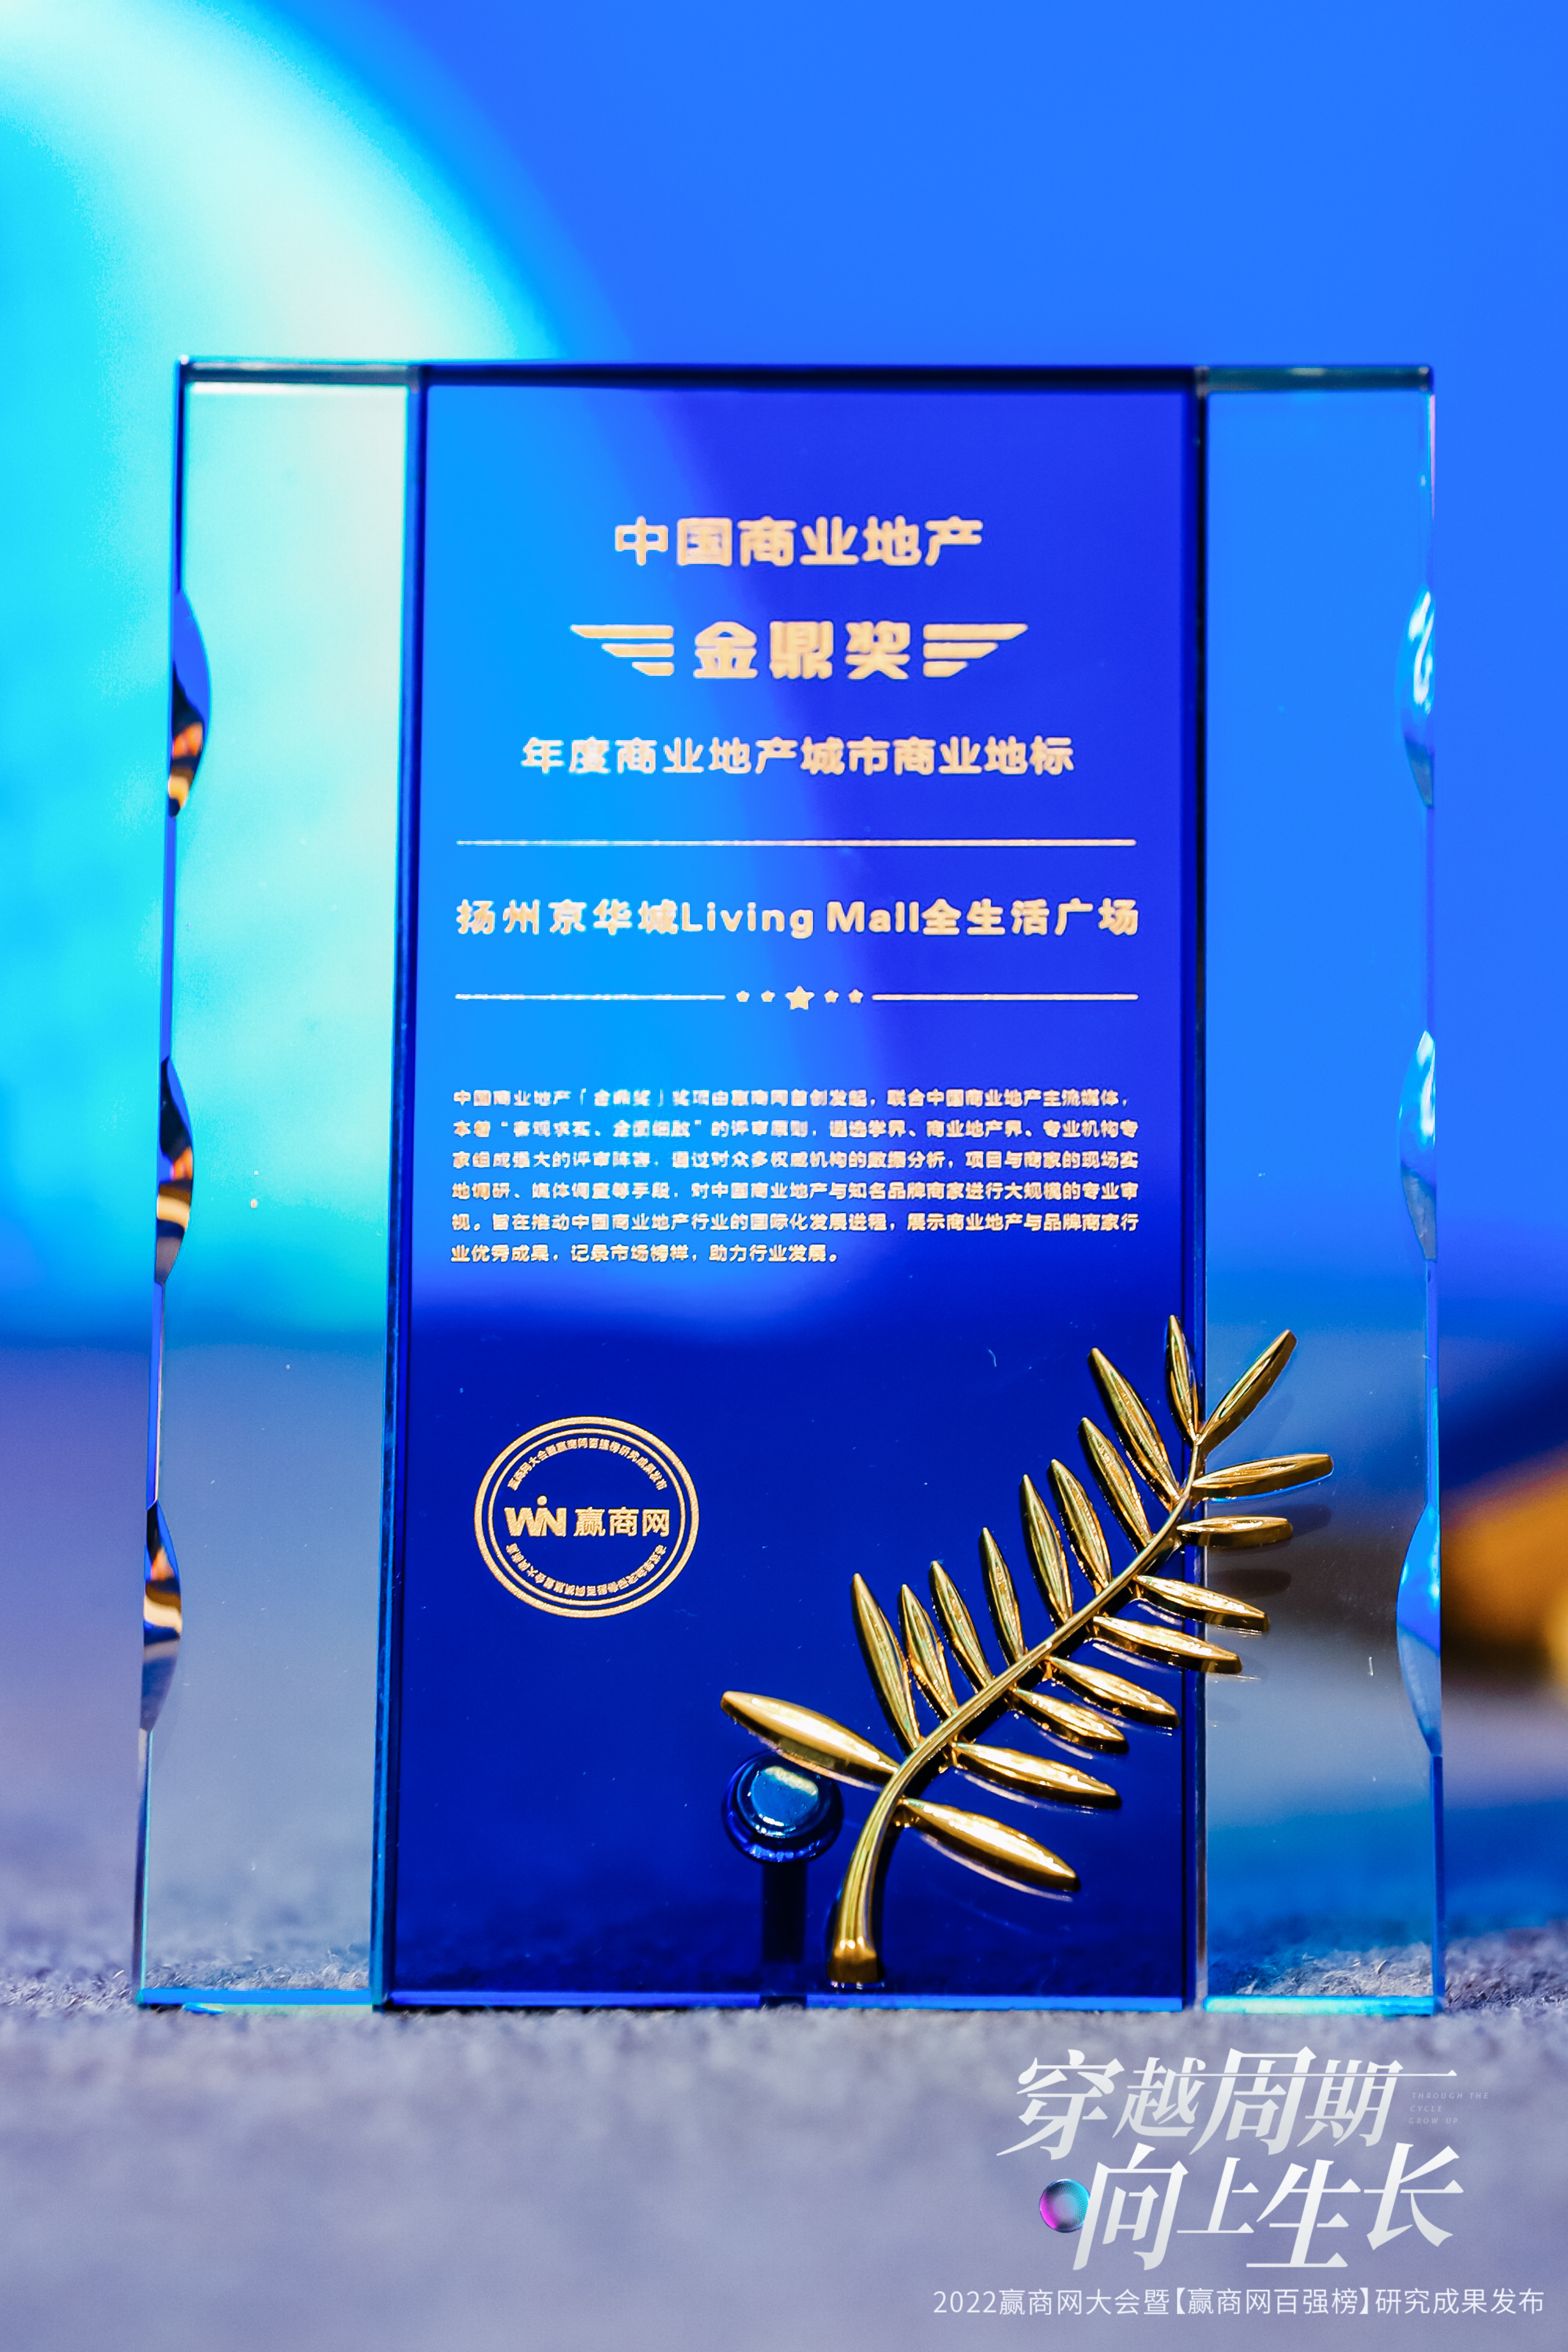 扬州京华城荣获“年度商业地产城市商业地标”奖项